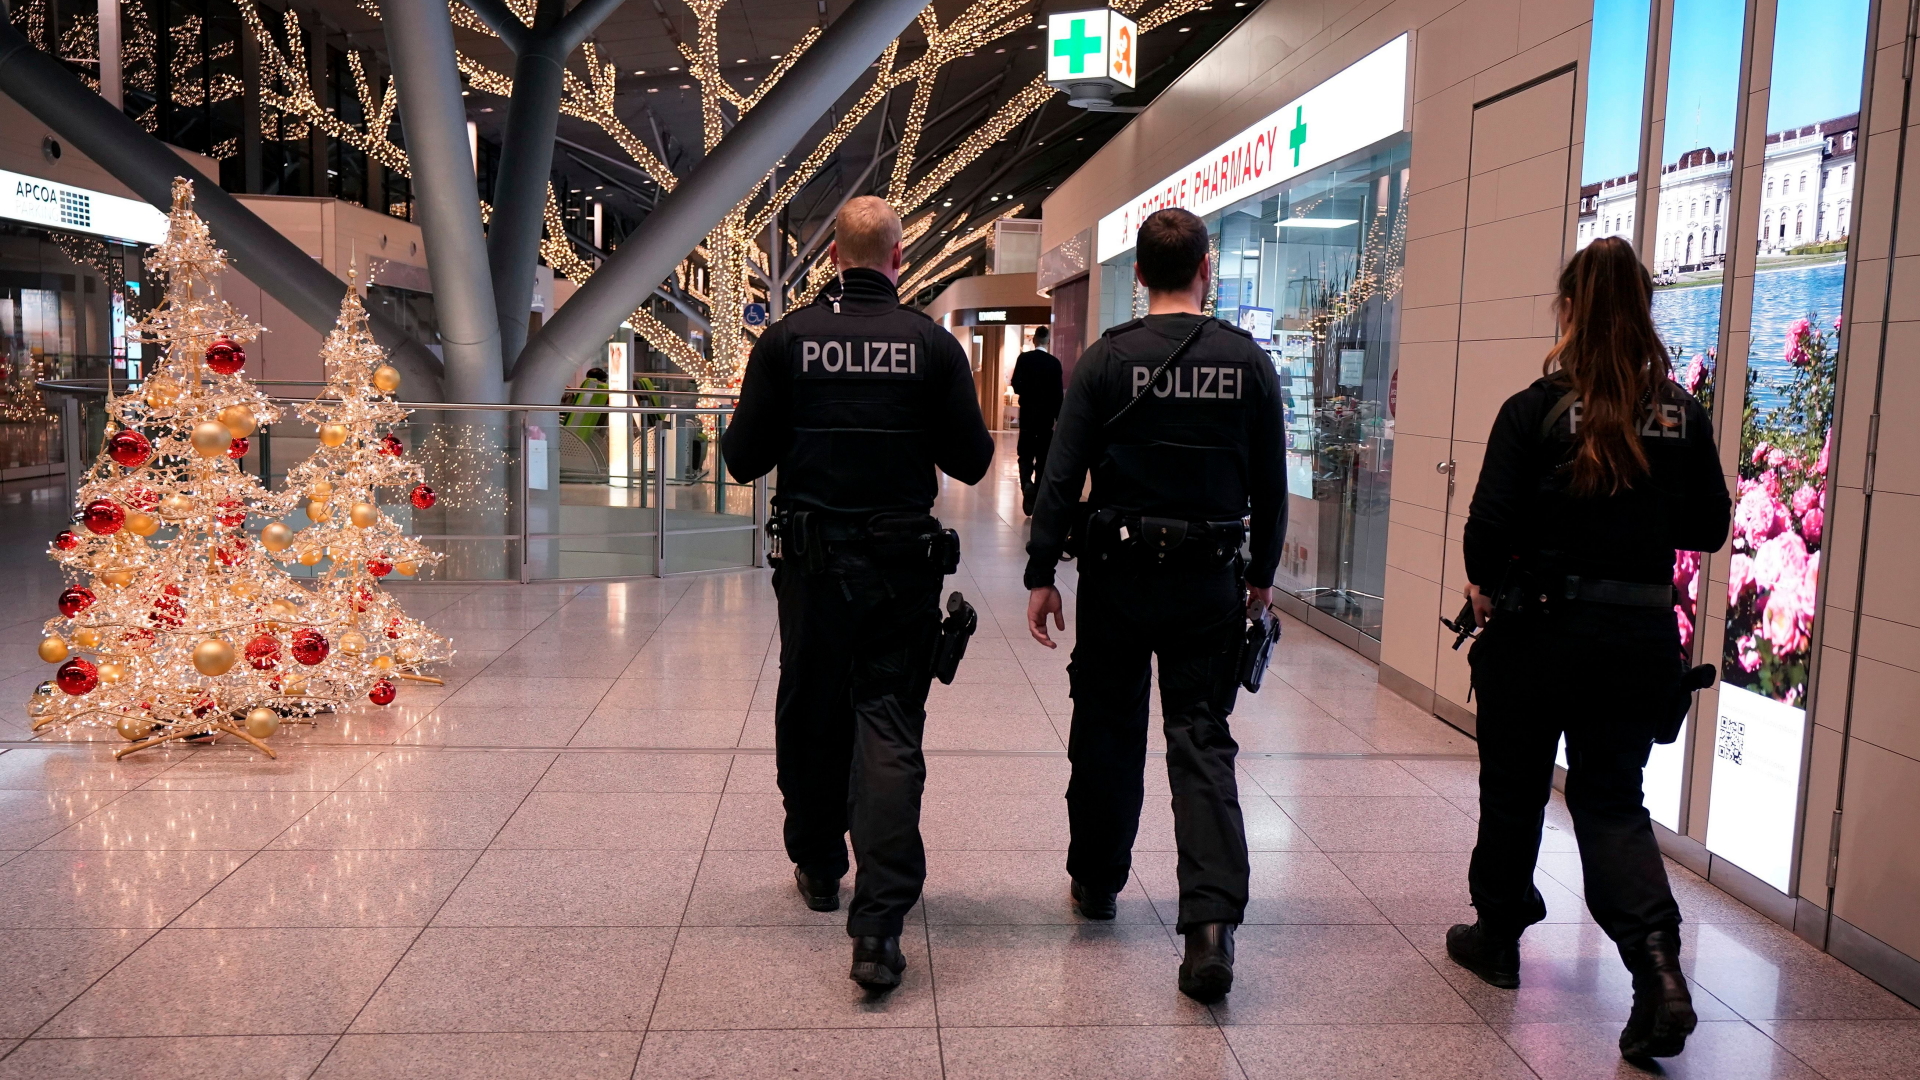 Sicherheitskräfte patrouillieren am Stuttgarter Flughafen. | Bildquelle: RONALD WITTEK/EPA-EFE/REX